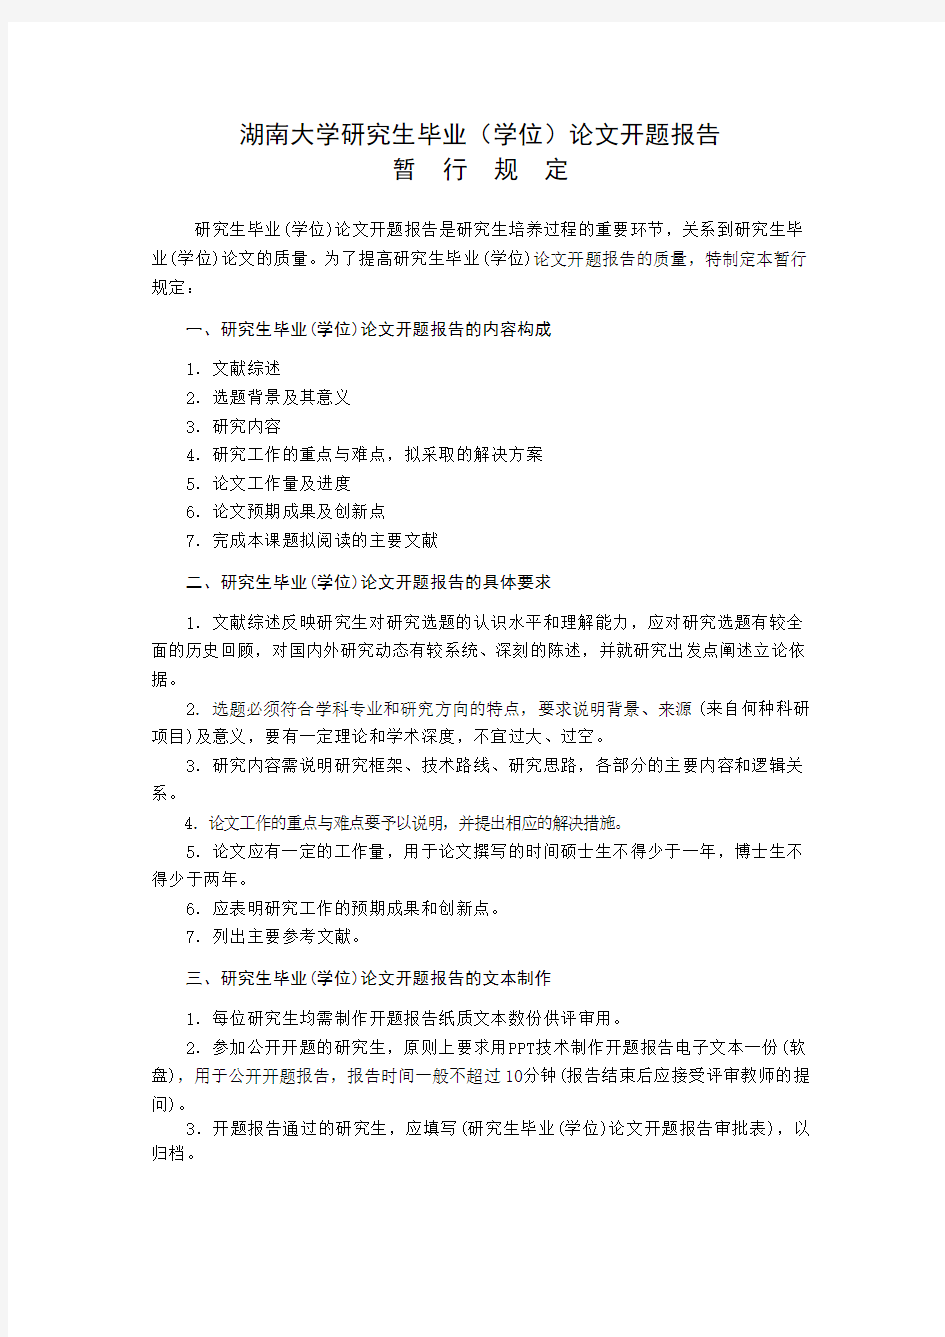 湖南大学开题报告模板(A4双面,1份)解析